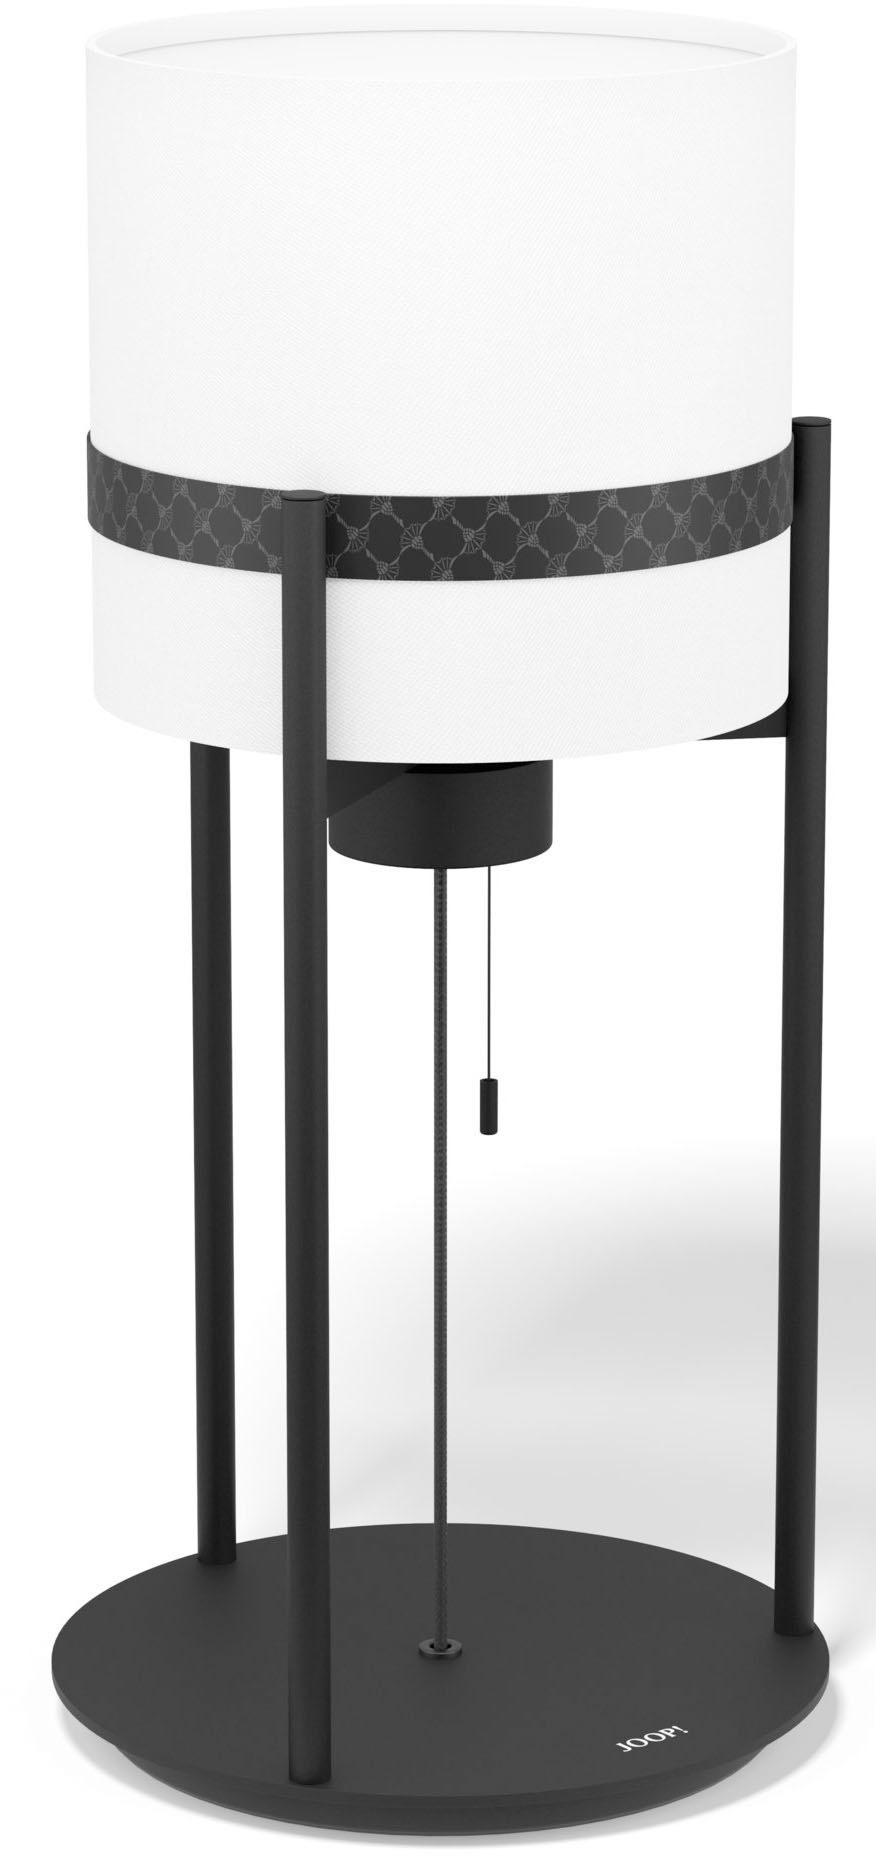 Joop Tischleuchte ROUND LIGHTS BLACK, E27, 1 St., Warmweiß, Tischleuchte mit rundem, gewebtem Textil-Leuchtenschirm in Weiß und eingelassenem Metall-Dekorband in Schwarz